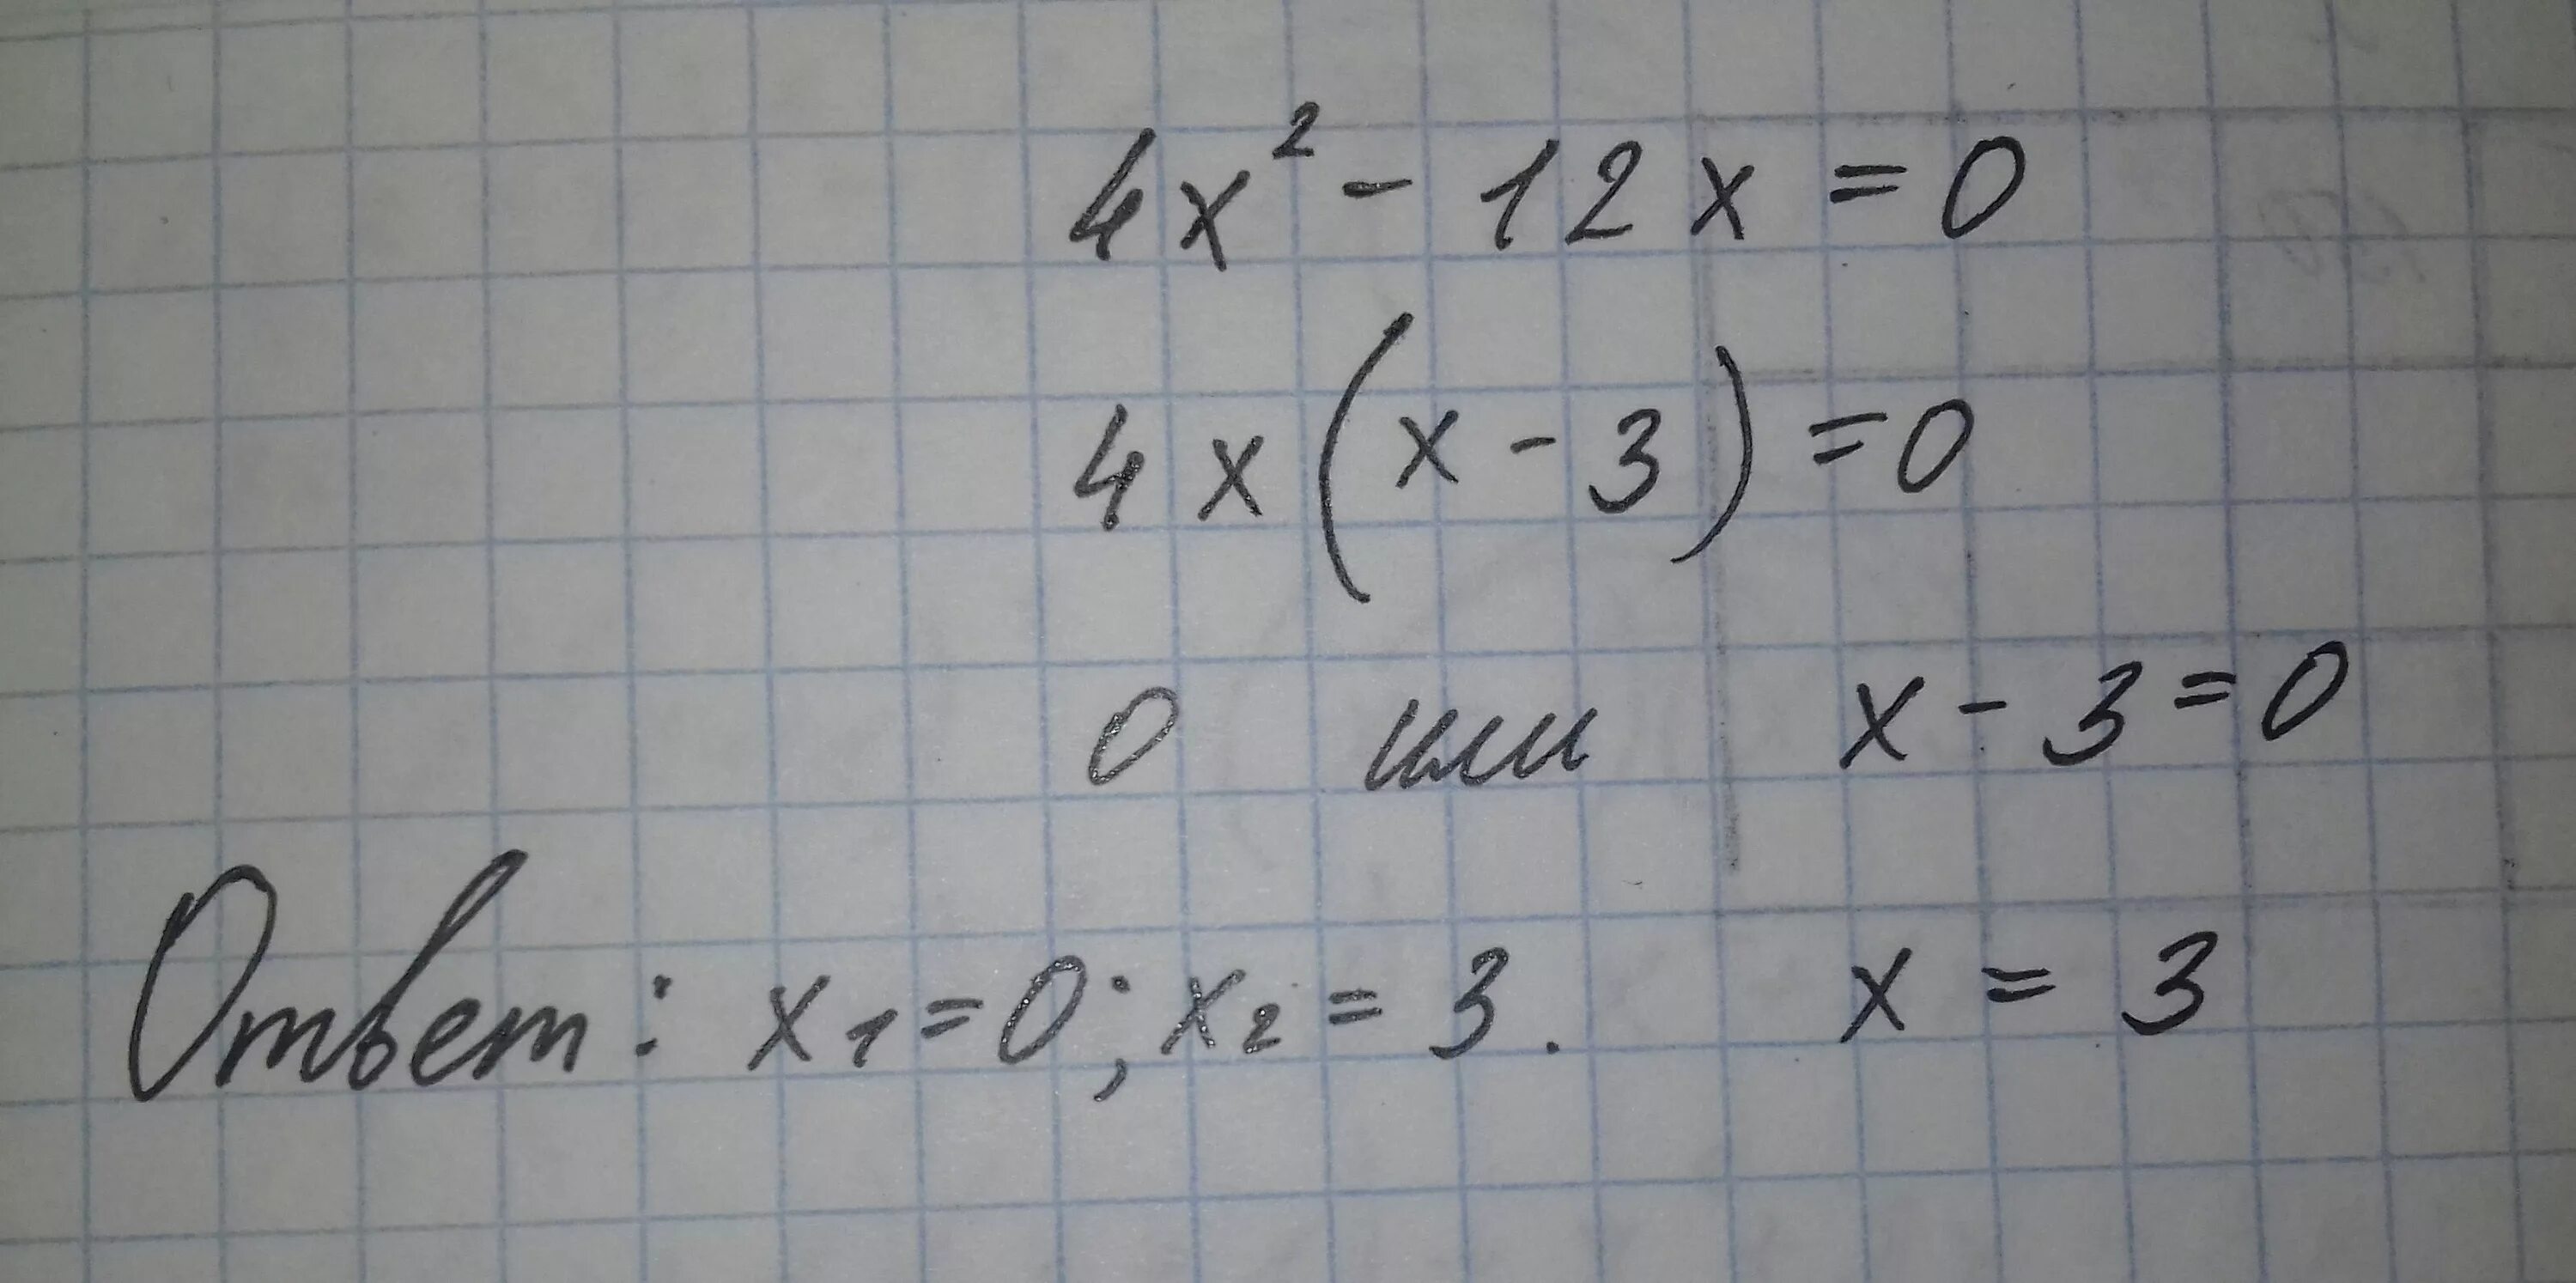 2х 8 2 2х 12 2. 2х + 4у – 12 = 0. (Х+4у)(х-2у)=0 и х+2у=12. Х2+х-12 0. 2х12.